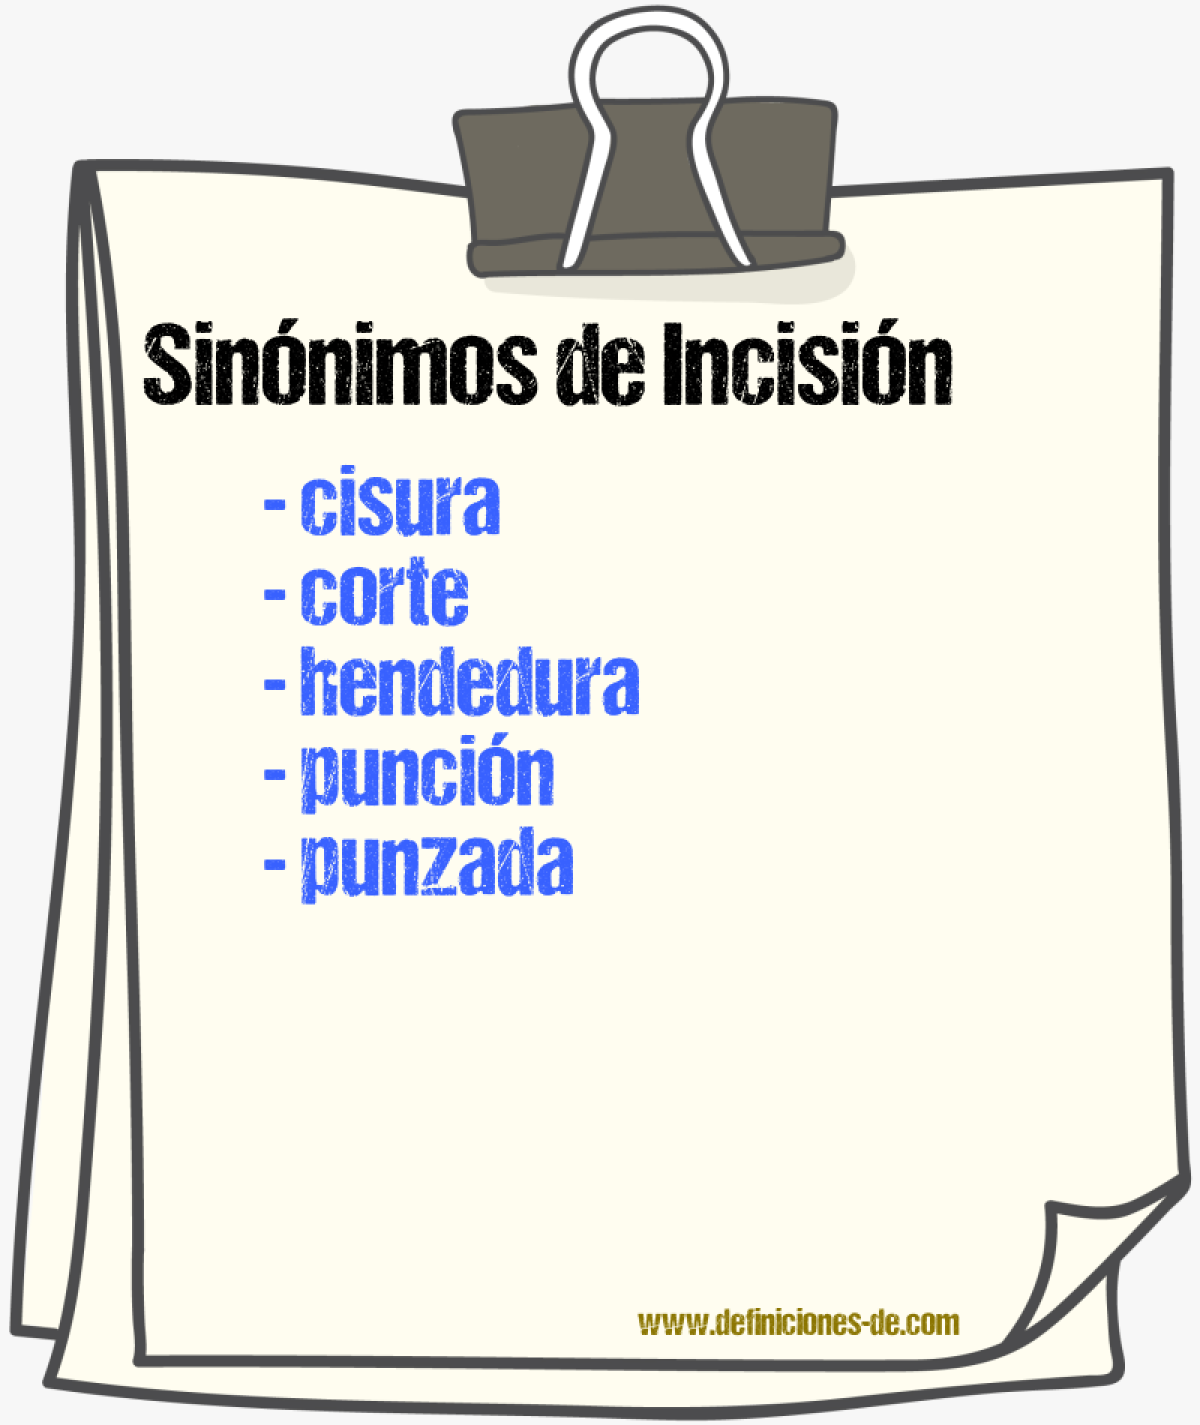 Sinónimos de incisión